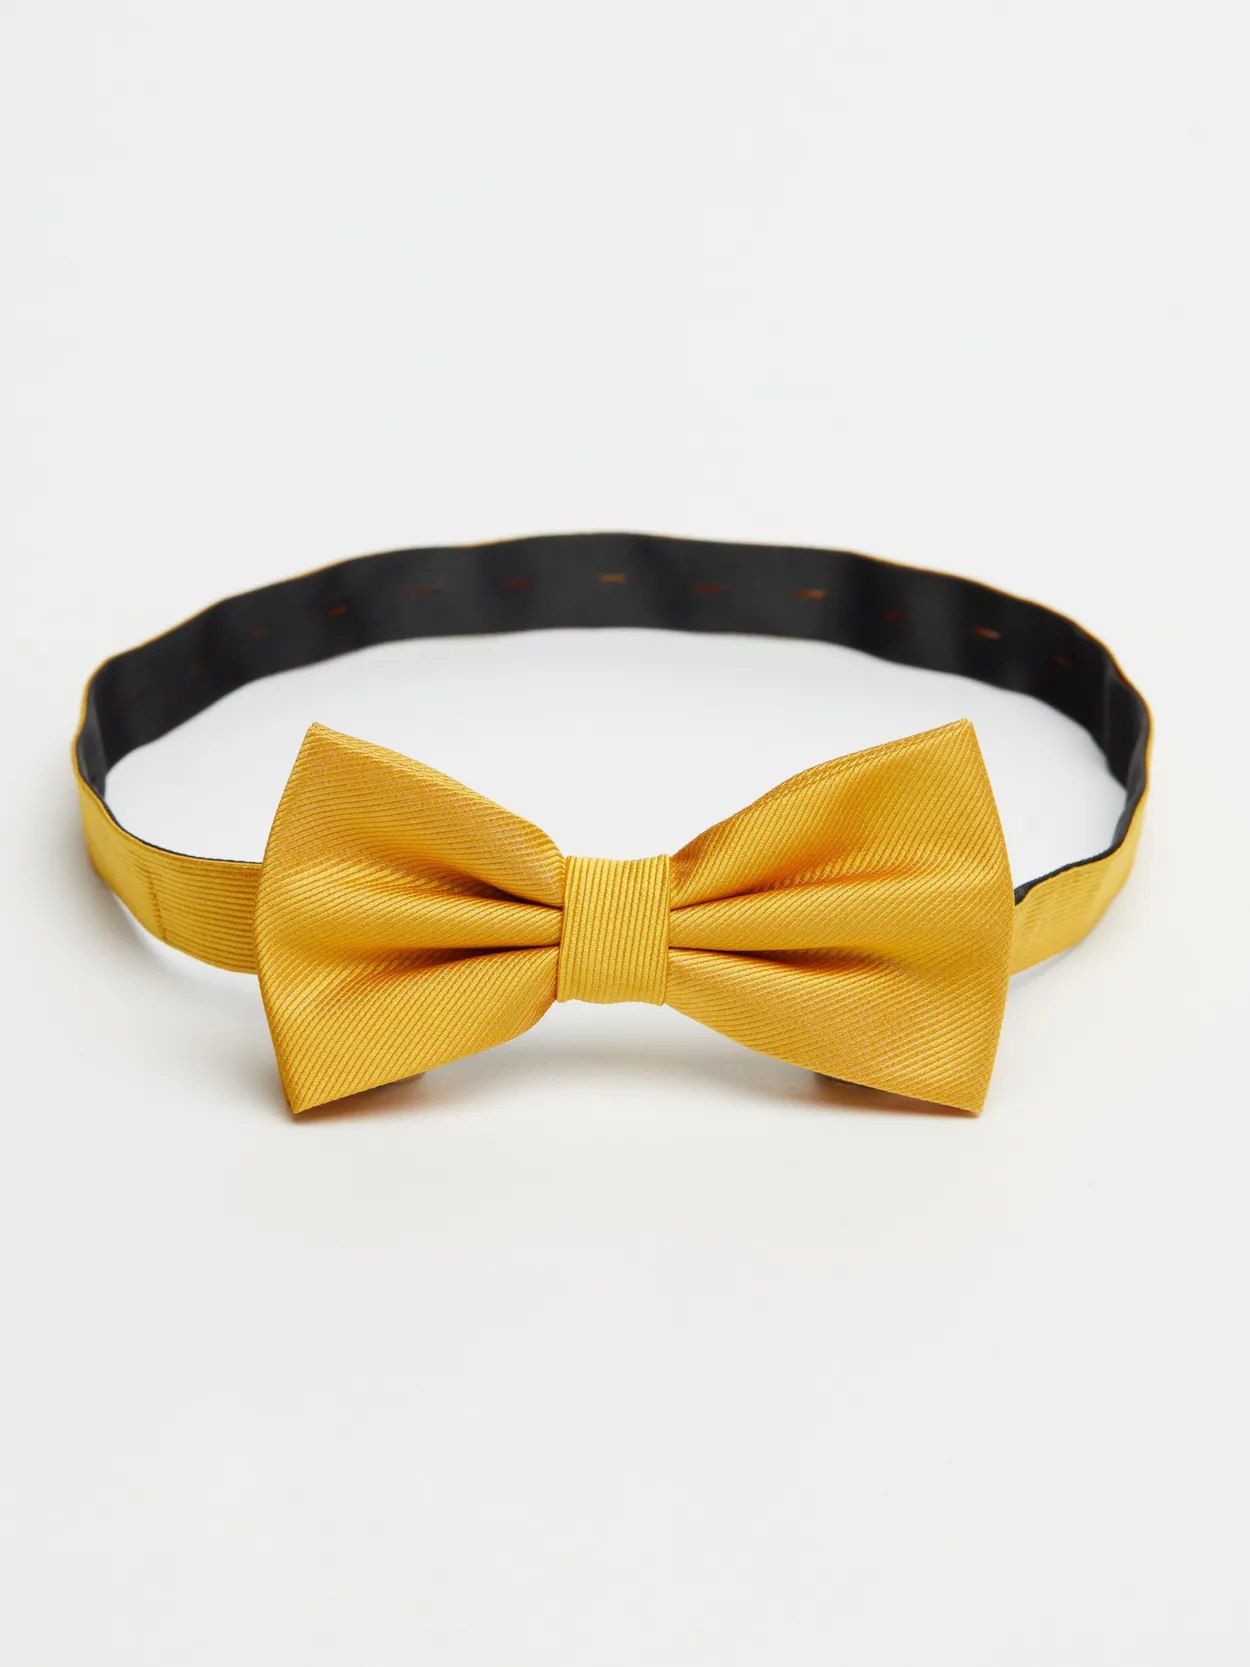 Gold Bow Tie Plain